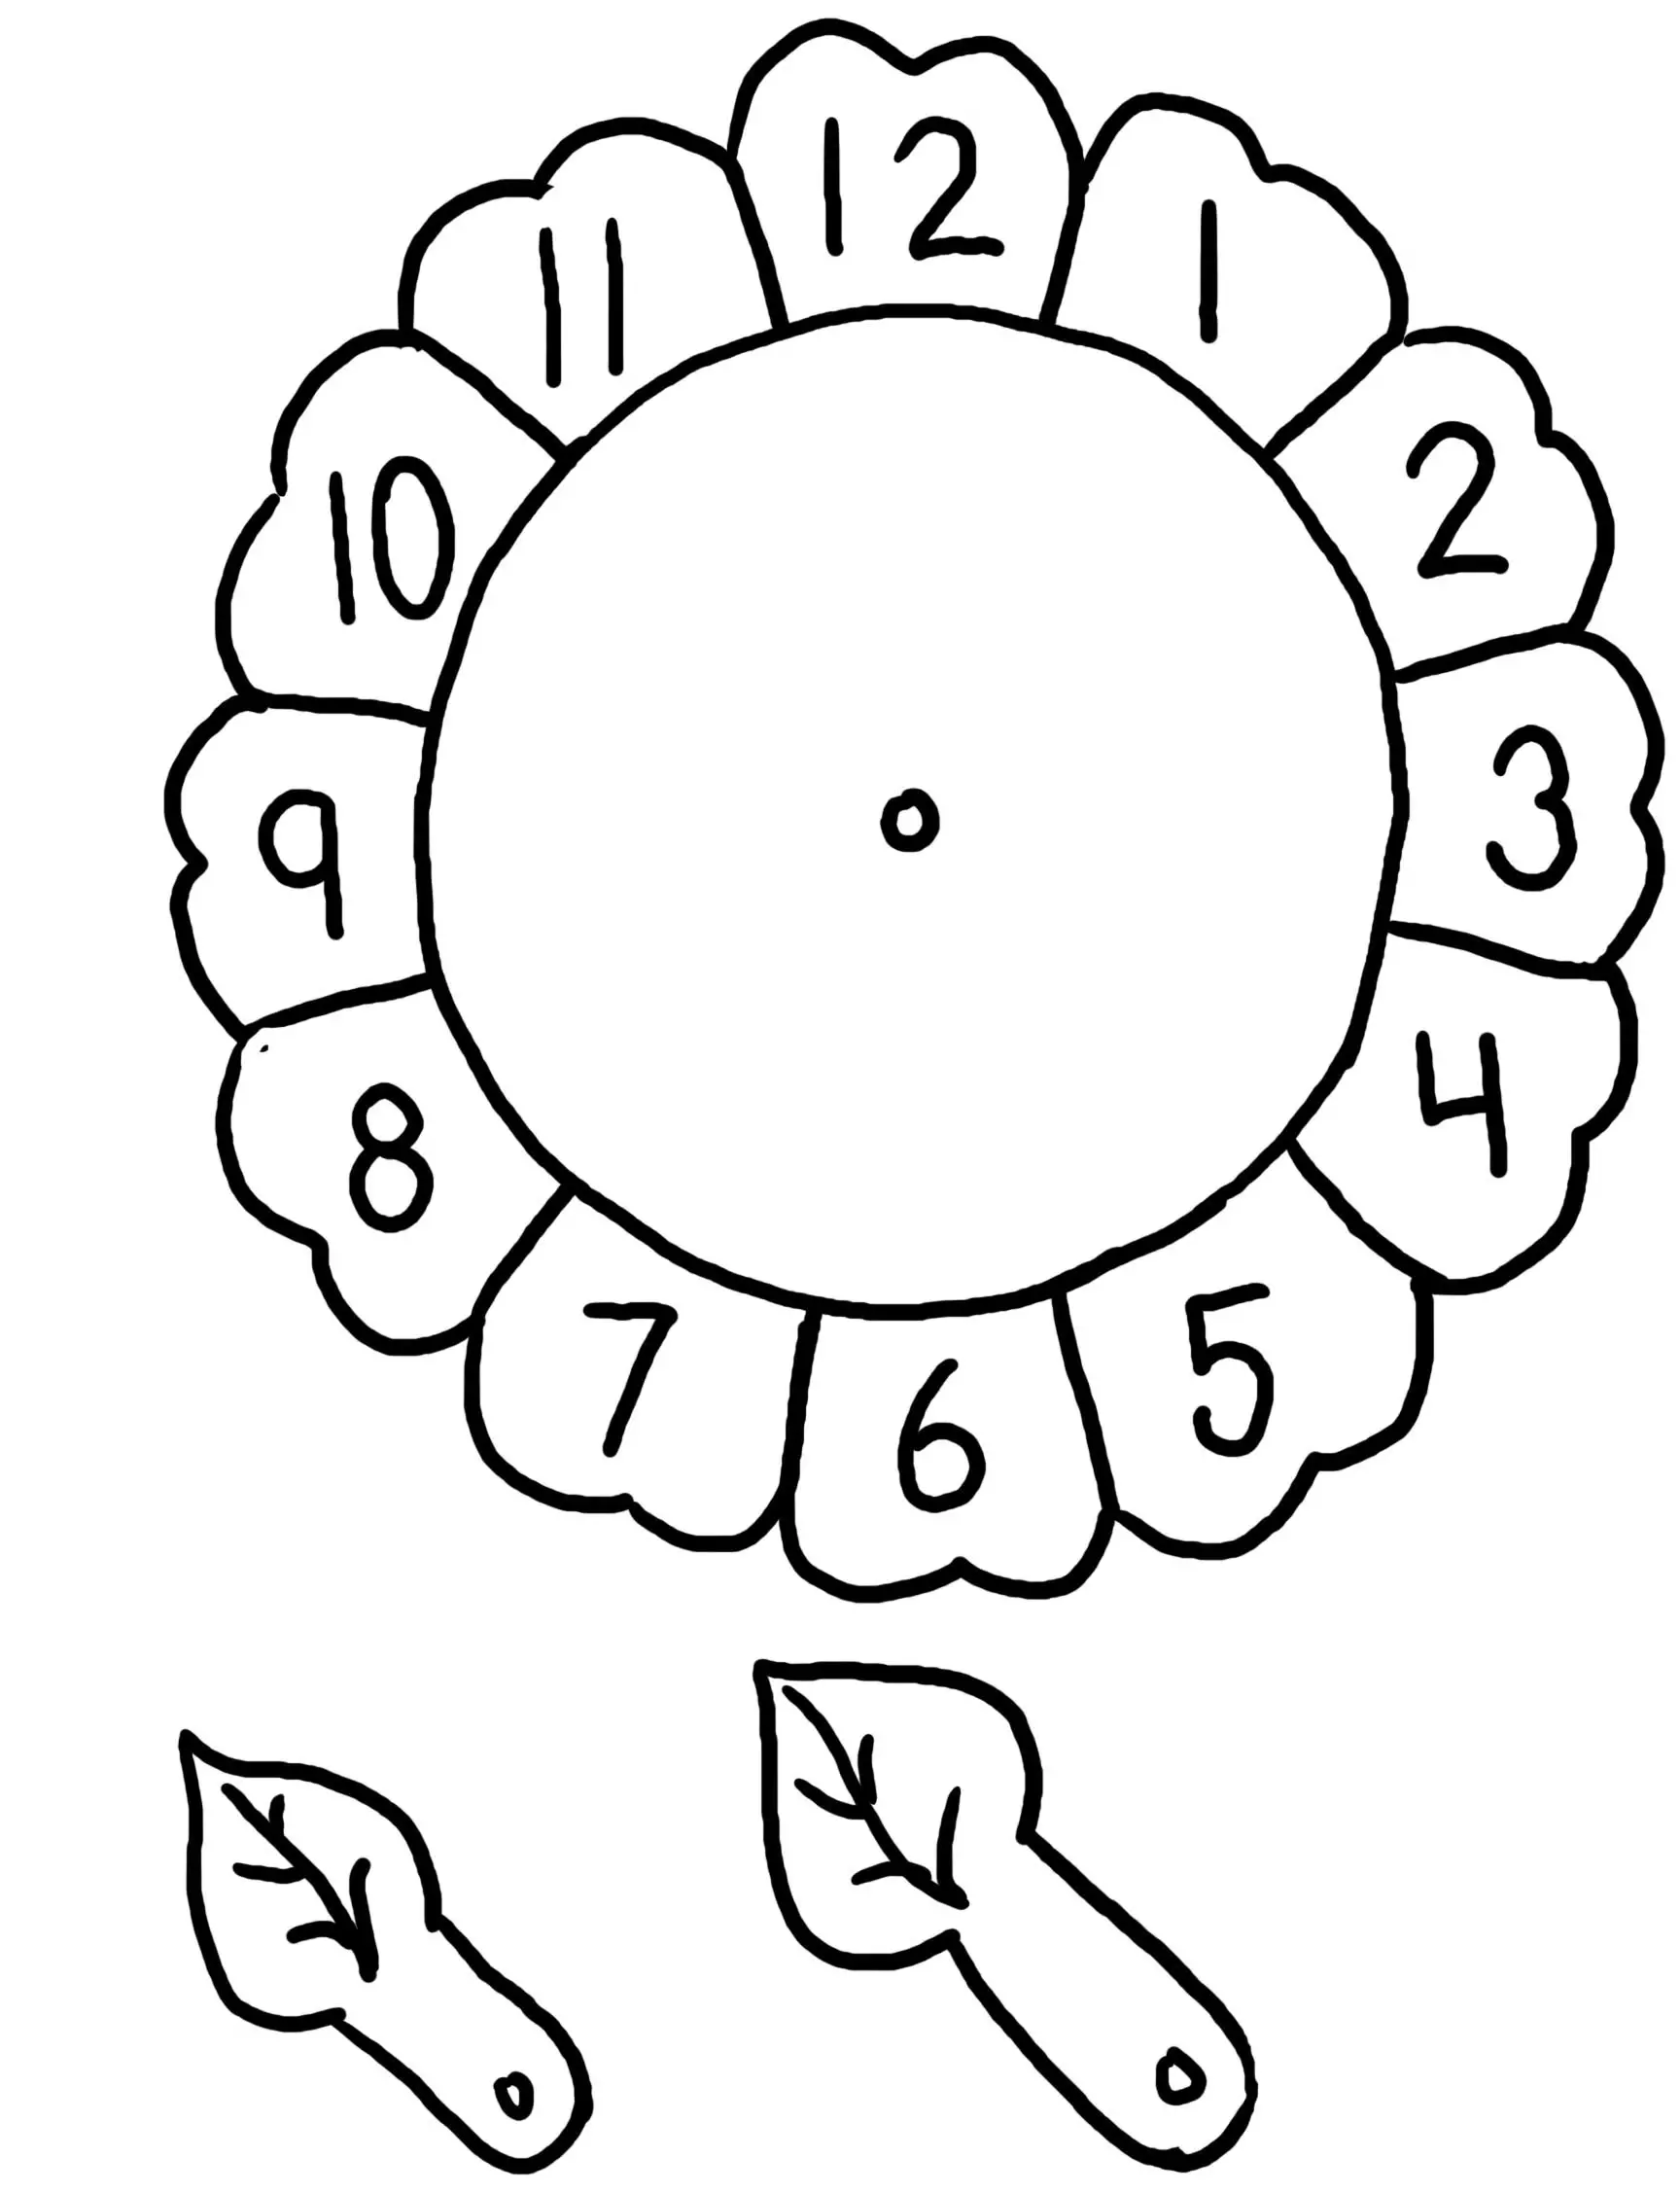 Dibujo de reloj en forma de flor para colorear